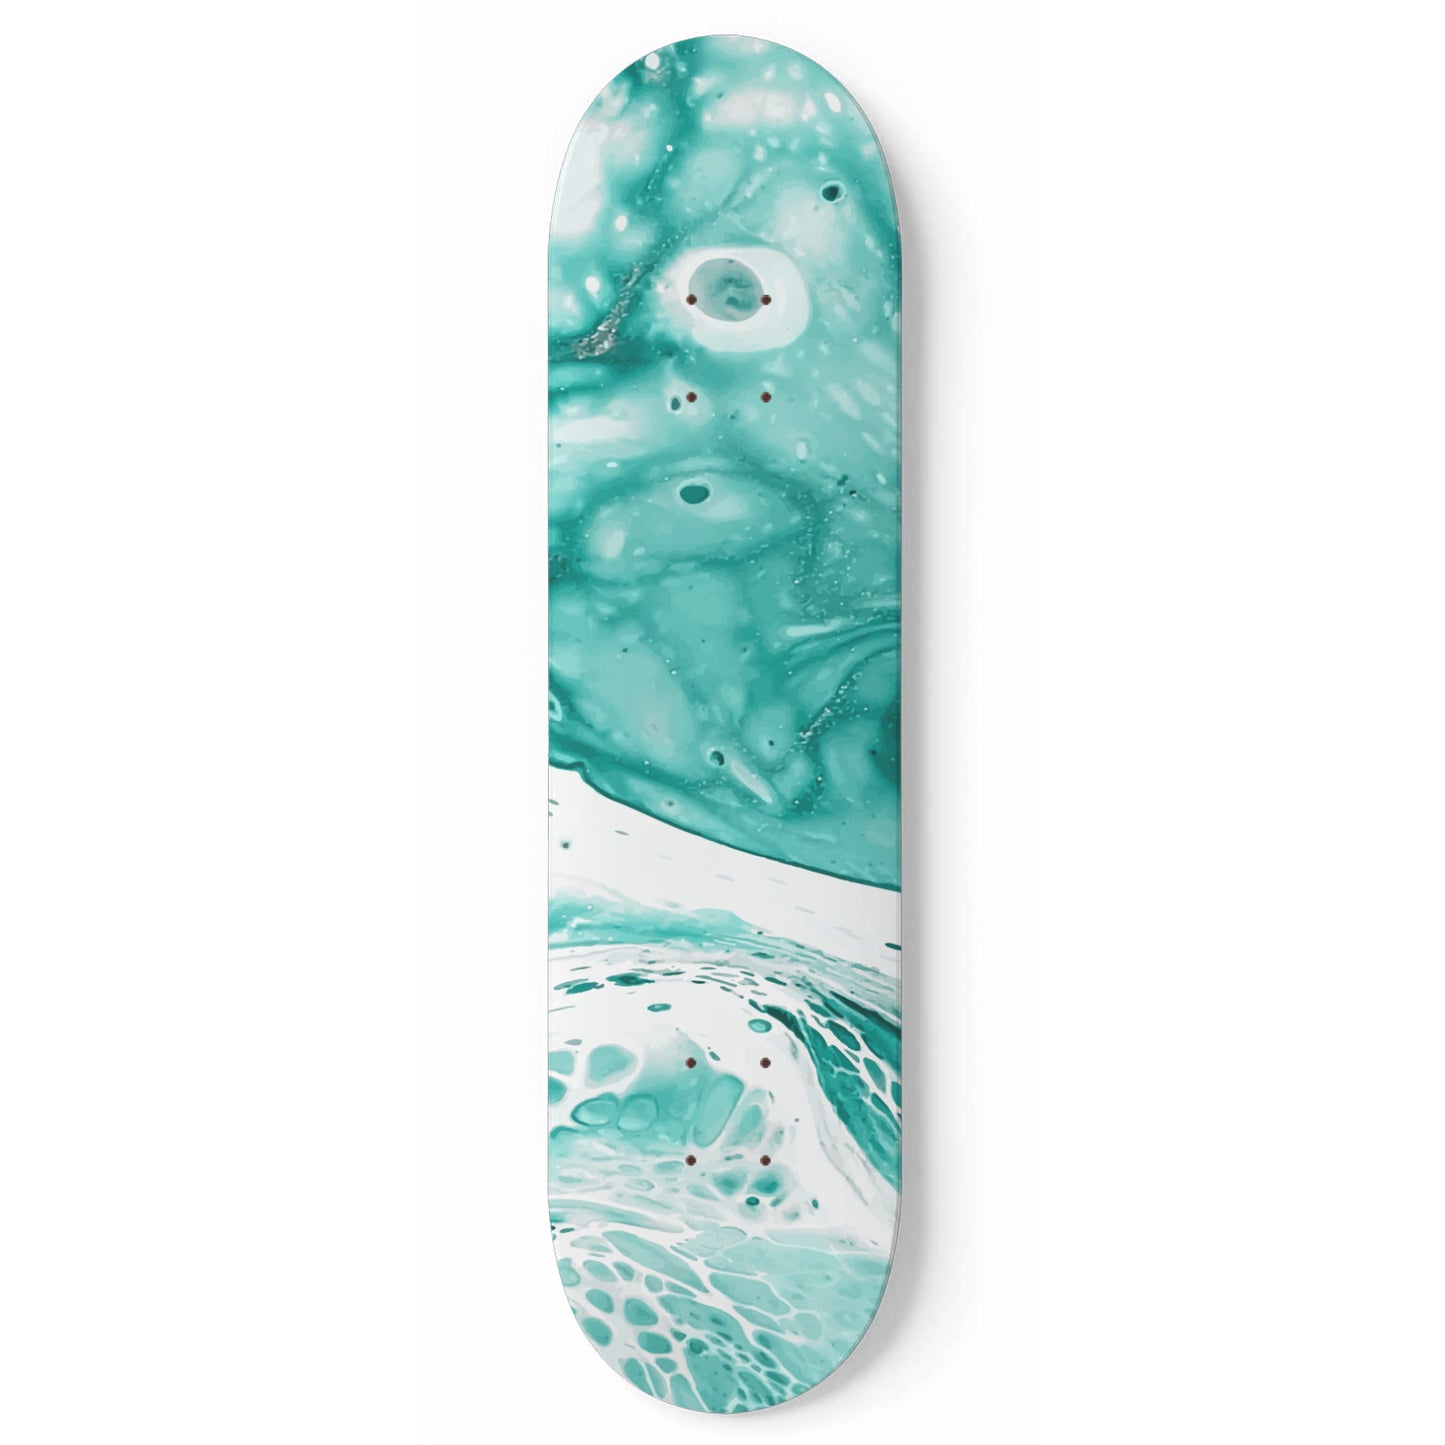 Effervesce - Liquid Marble Wall Art - Blue-Green 1-piece - Skateboard Deck Wall Art